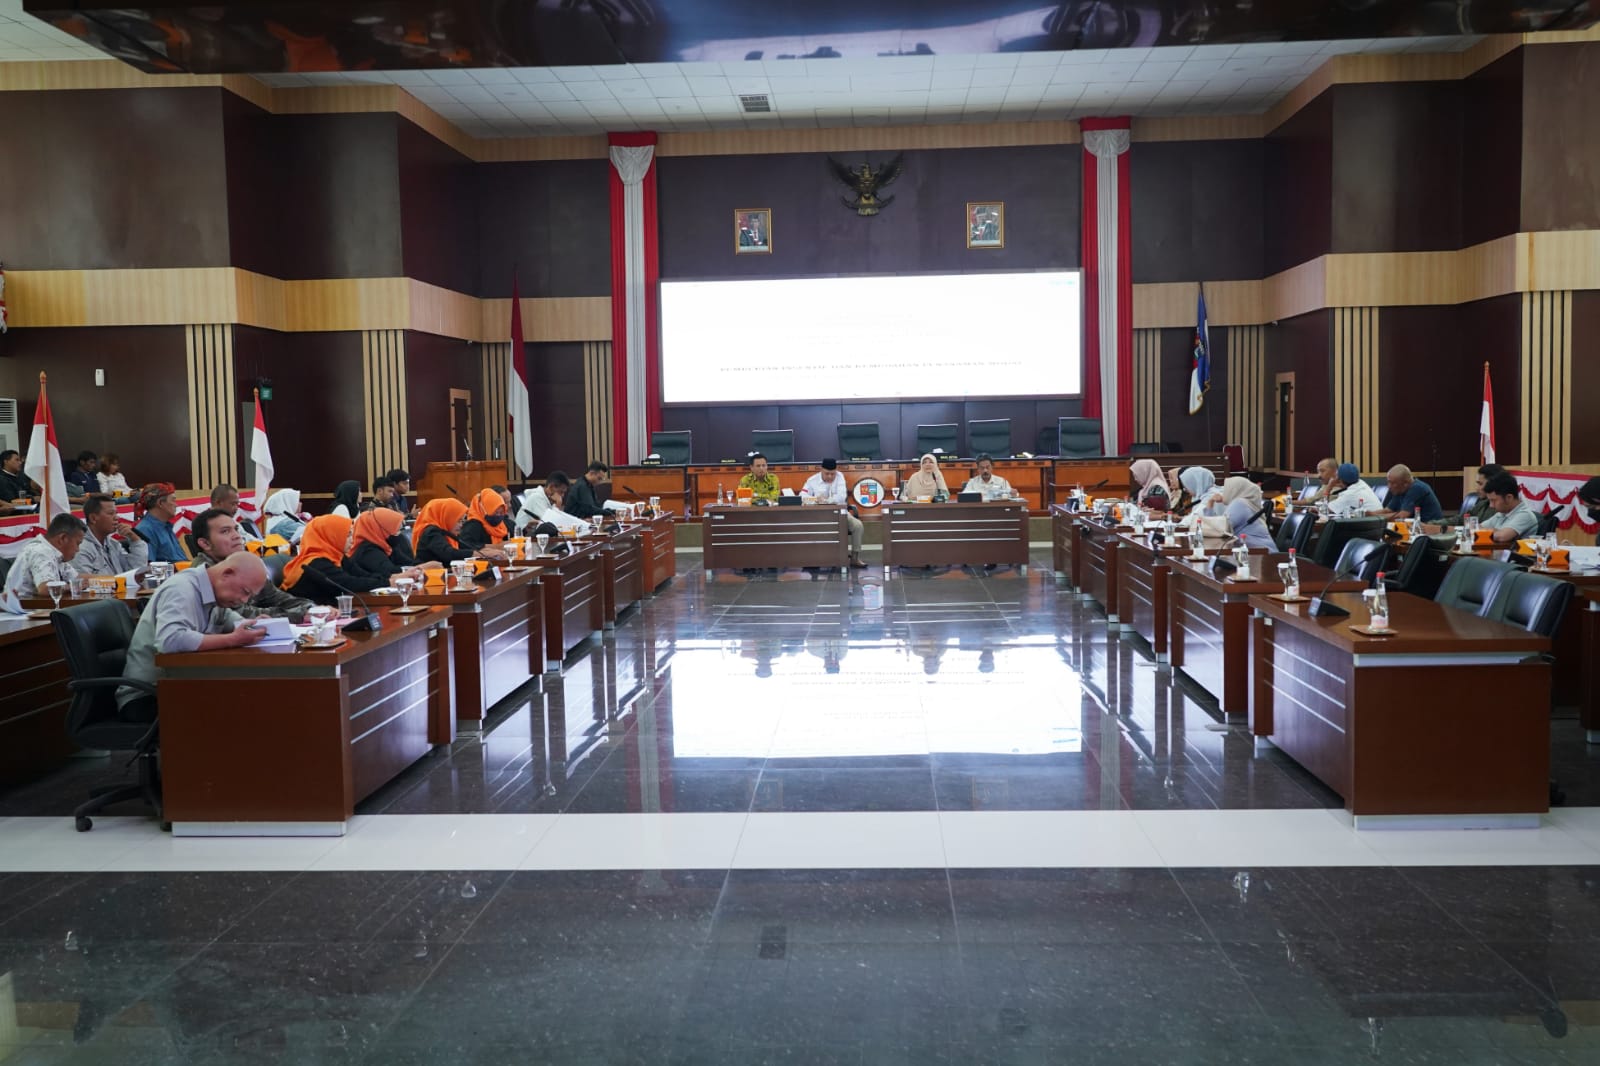 Jajaran DPRD Kota Bogor saat menggelar Rapat Dengar Pendapat (RDP) bersama masyarakat.